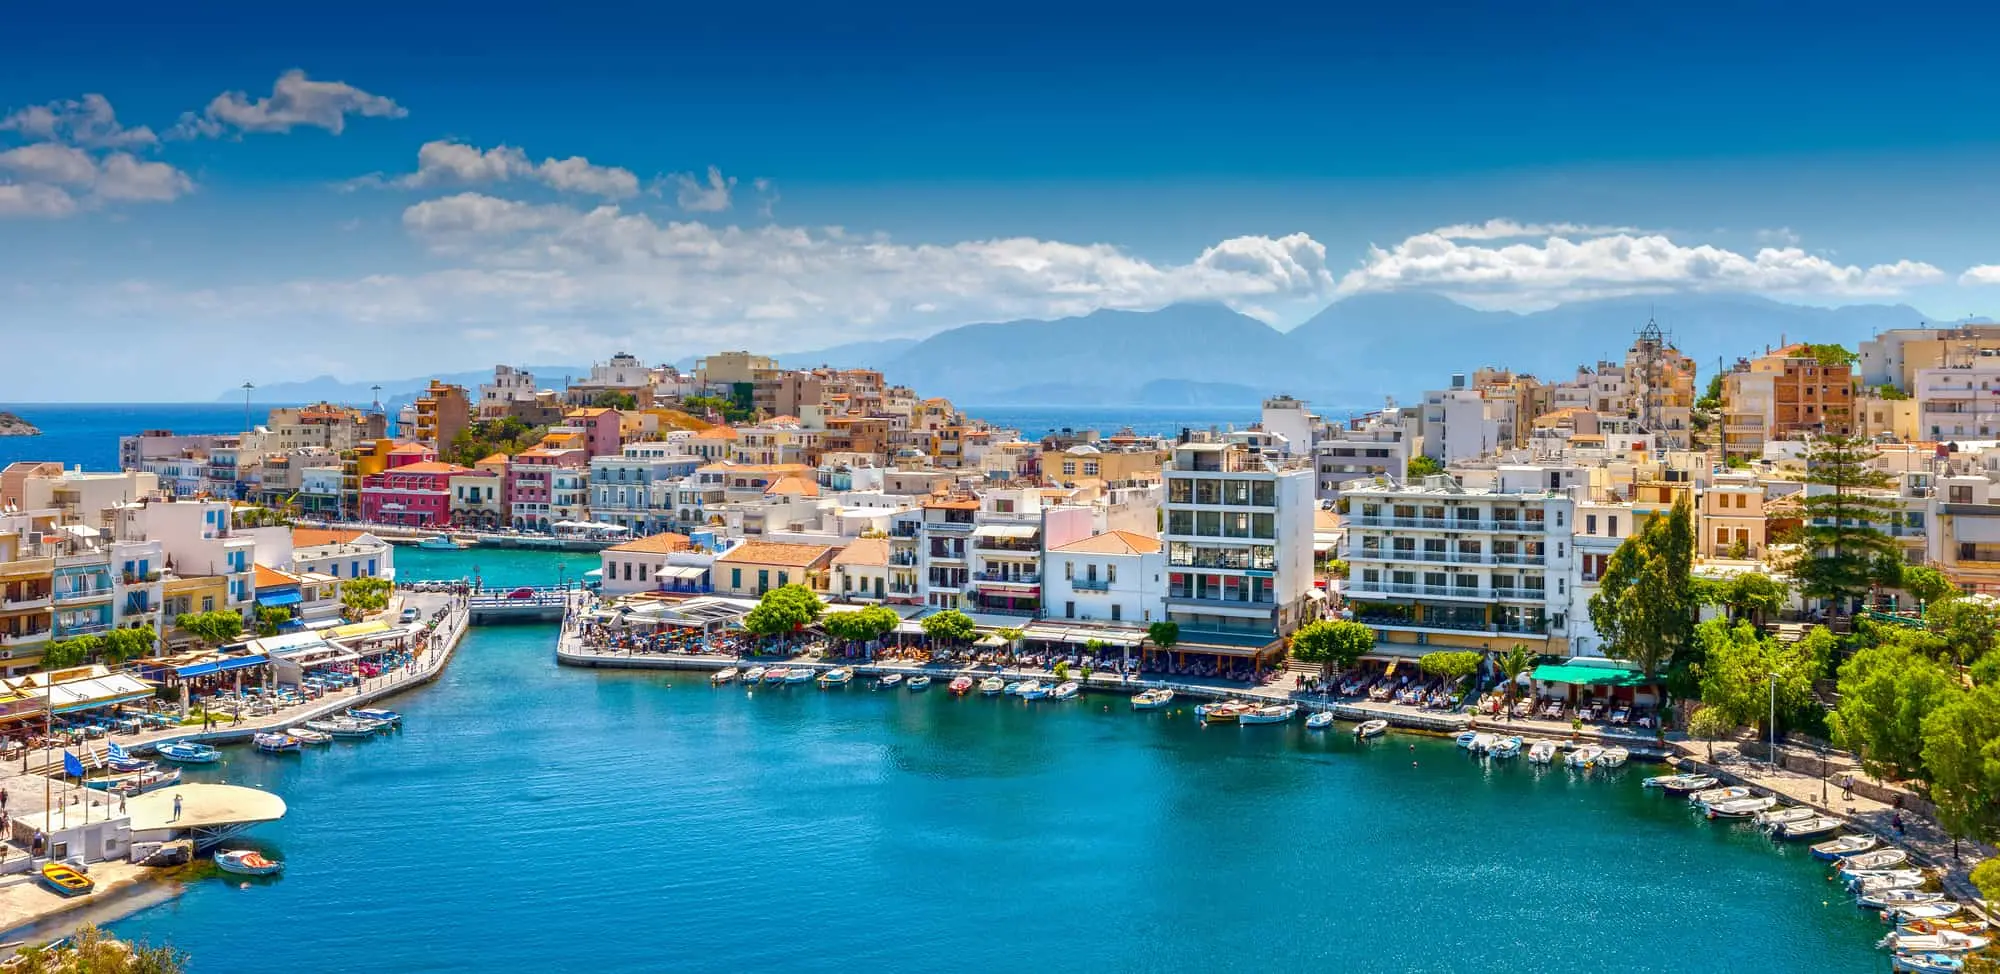 Kreta og Agios Nikolaos. Rhodos, Lindos Bay. Find dit rejsebureau til Grækenland